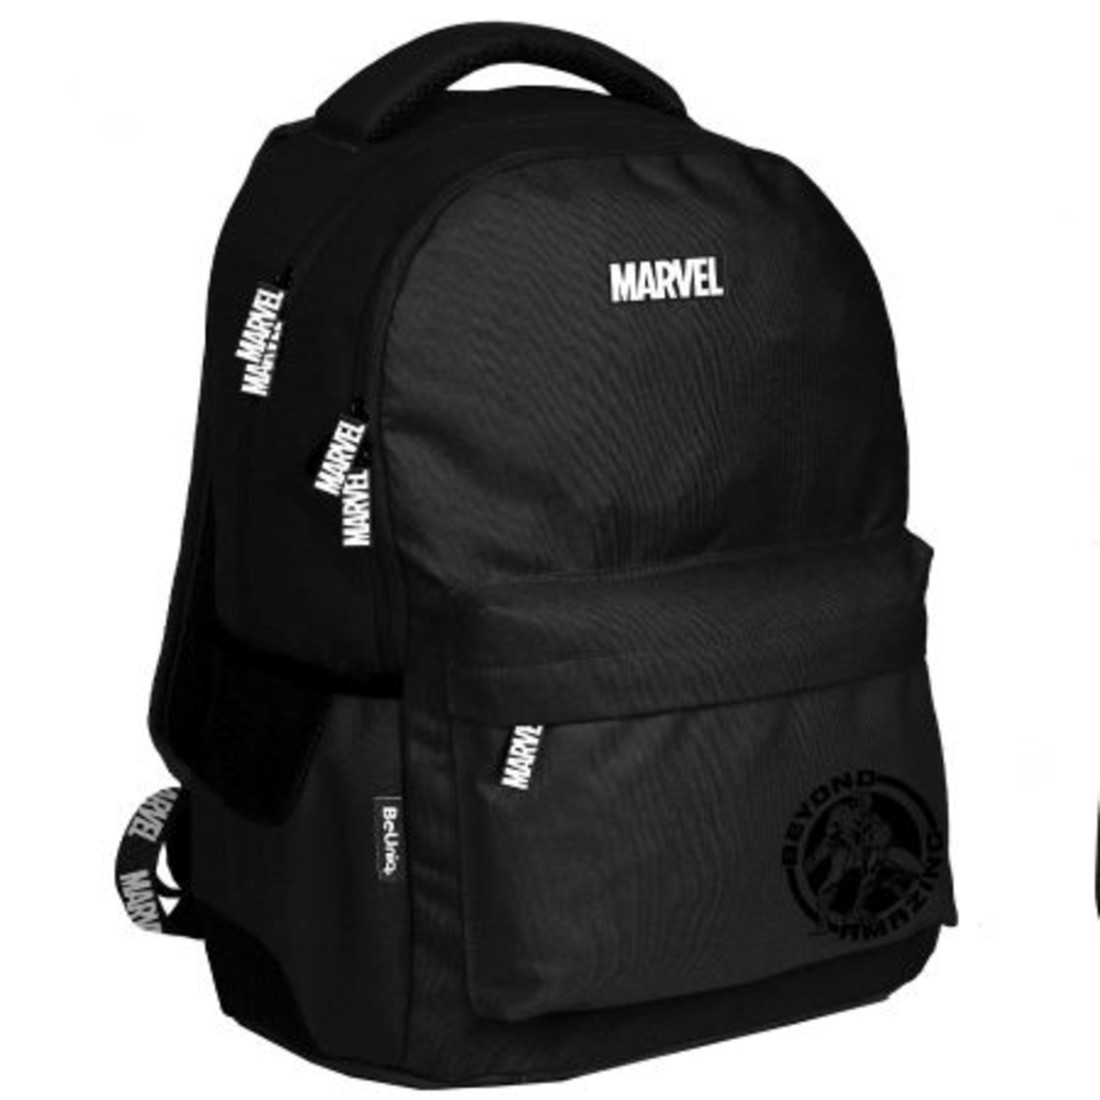 Paso Školní batoh Marvel černý